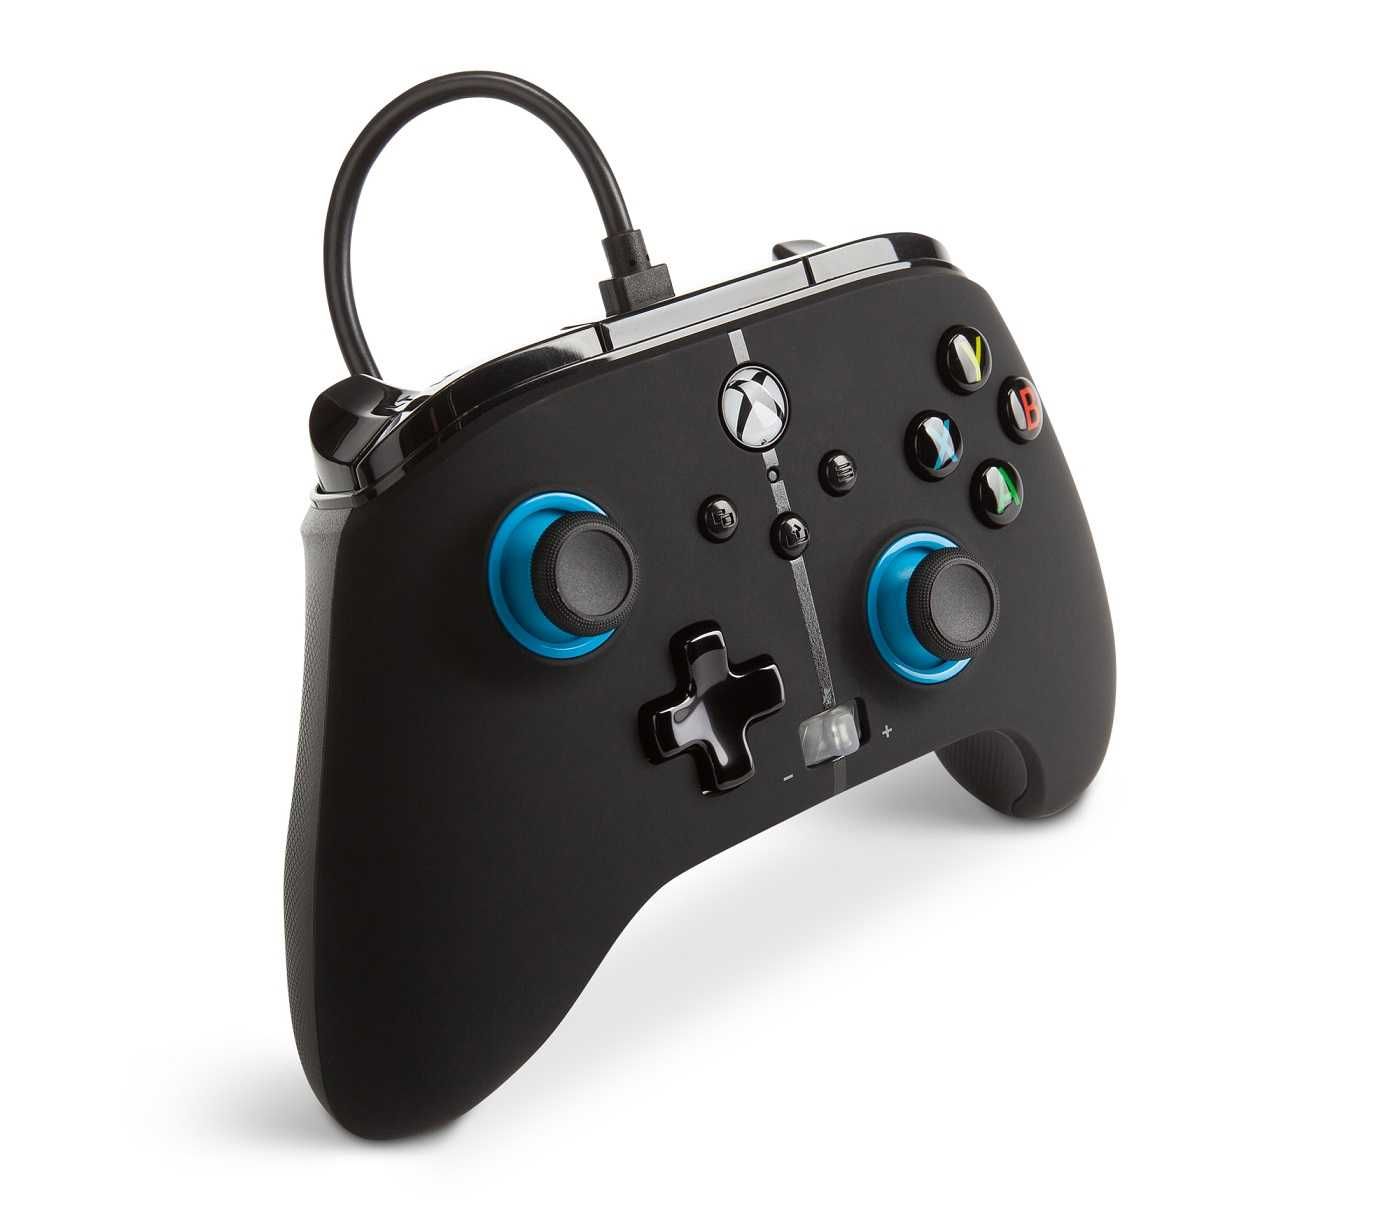 PowerA Xbox Series Pad przewodowy Blue Hint